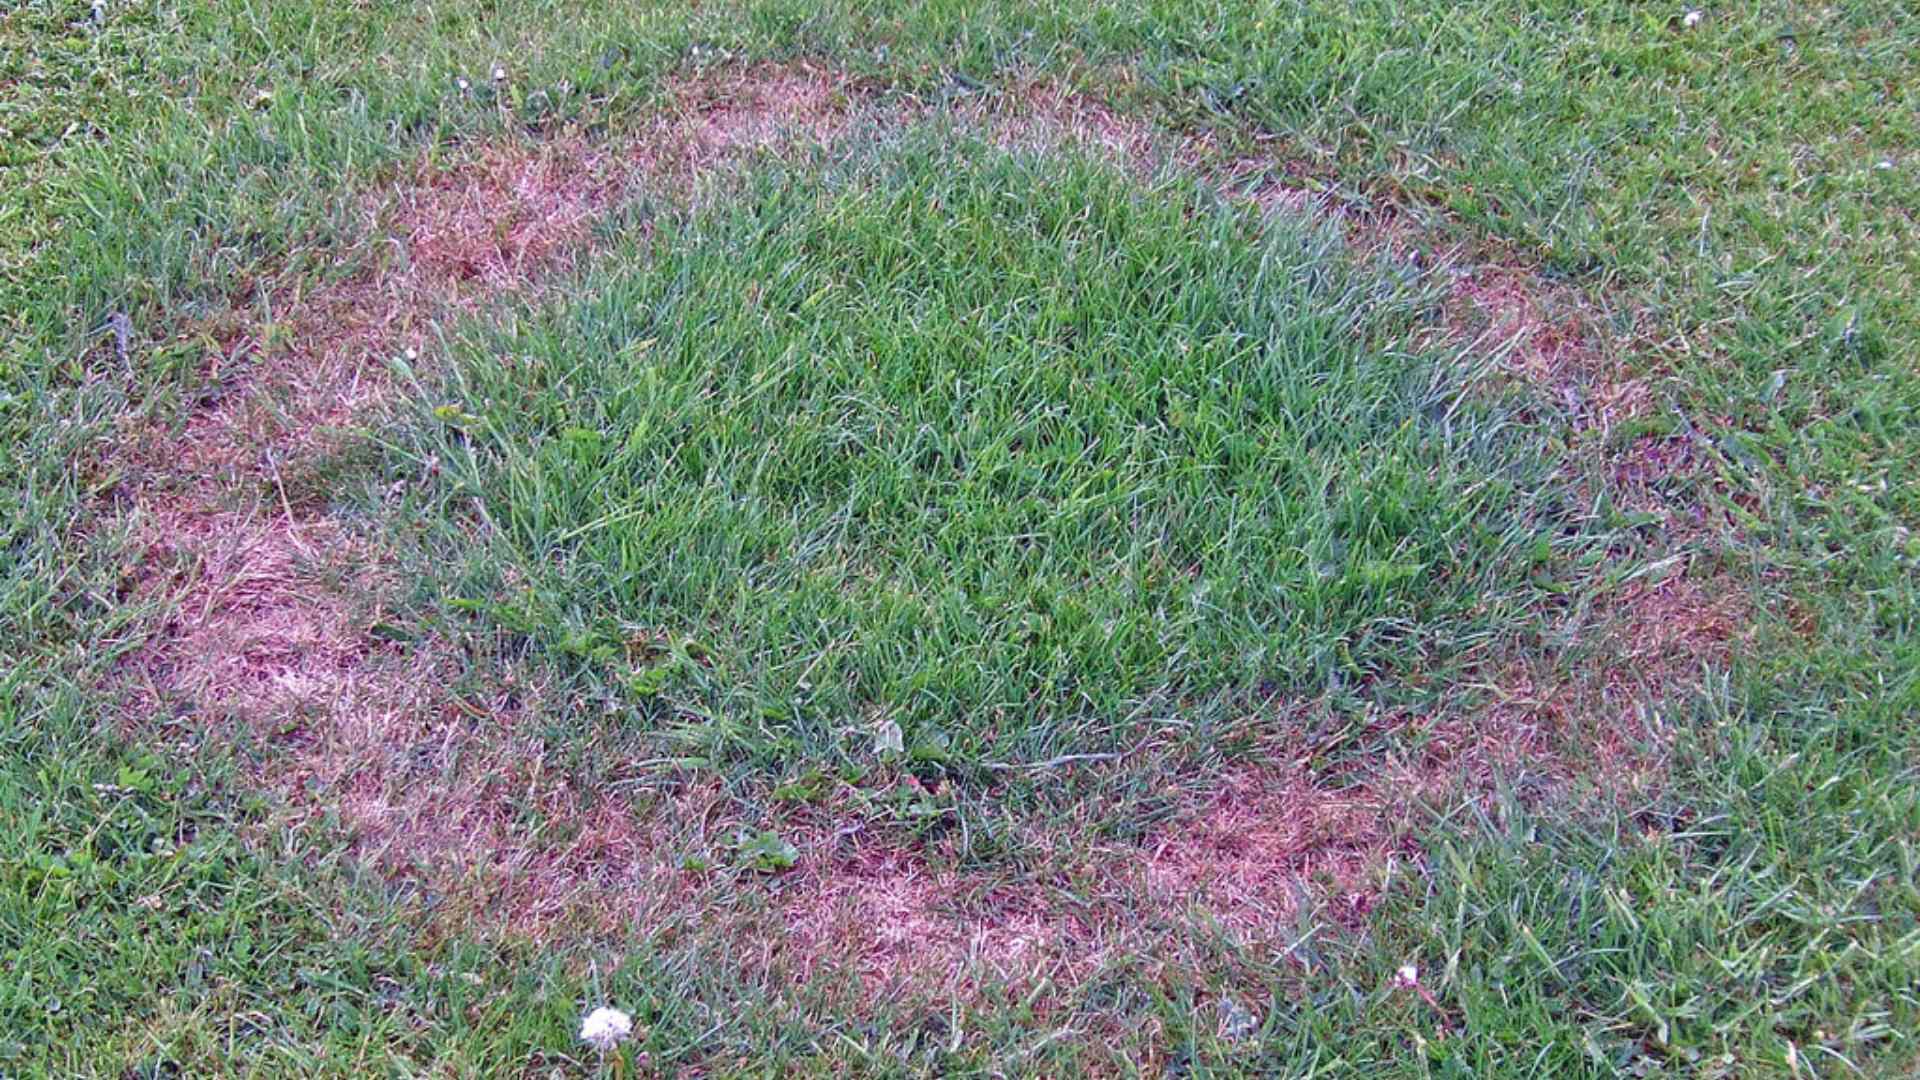 Fairy ring lawn disease in lawn in Mankato, MN.